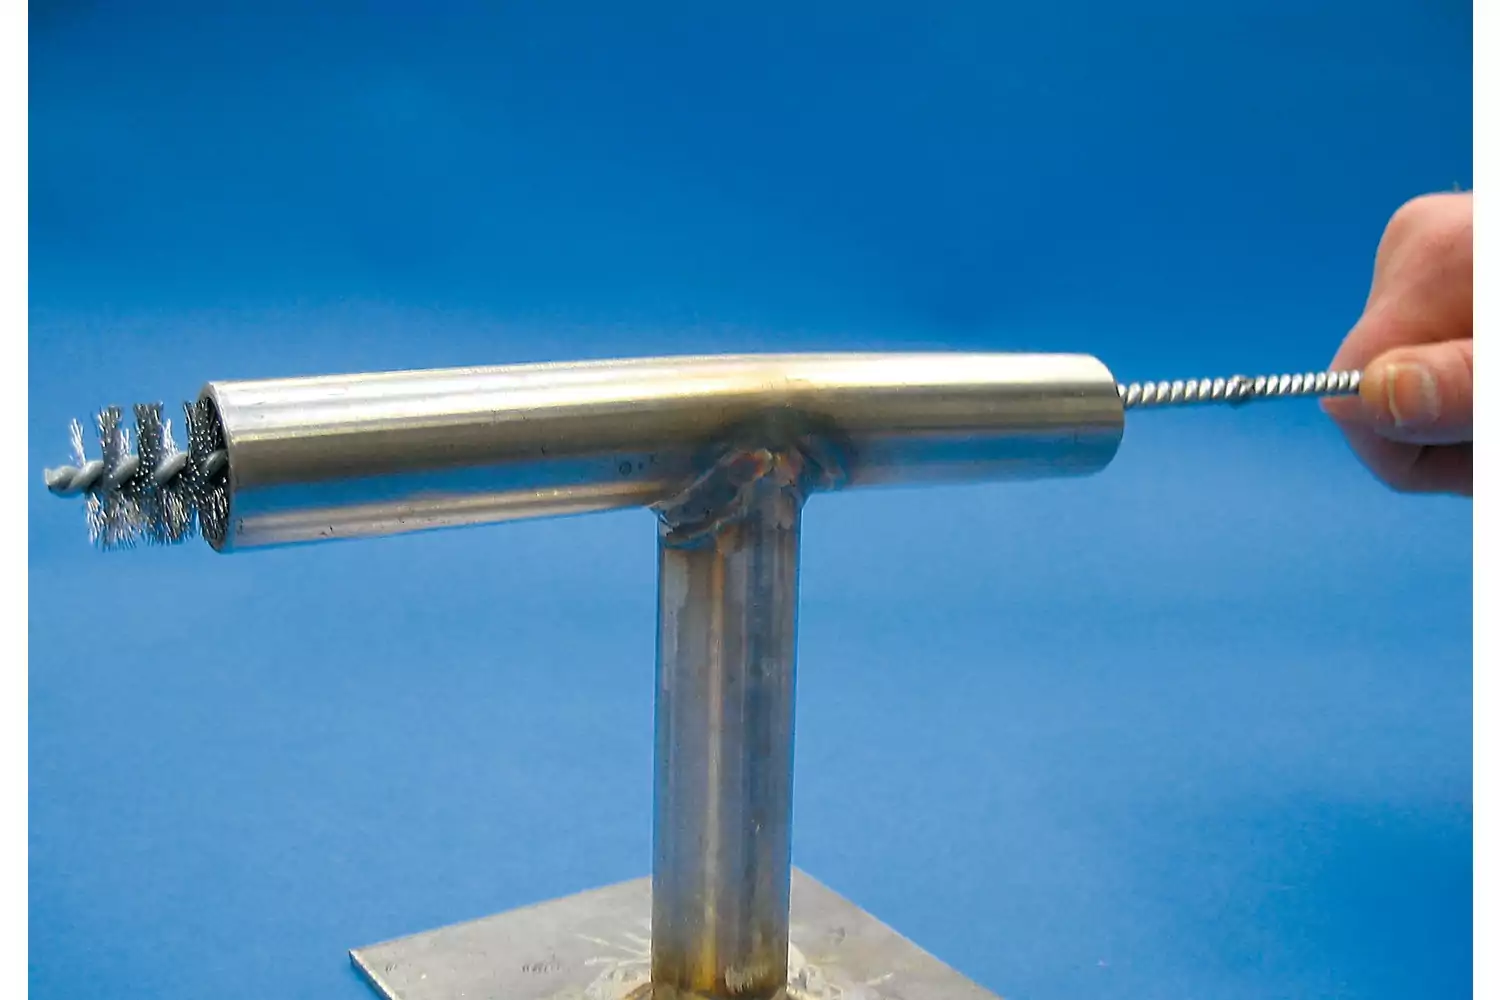 Accesorios de prolongador IBUV para cepillos limpiatubos con rosca M6 300 mm de longitud 2